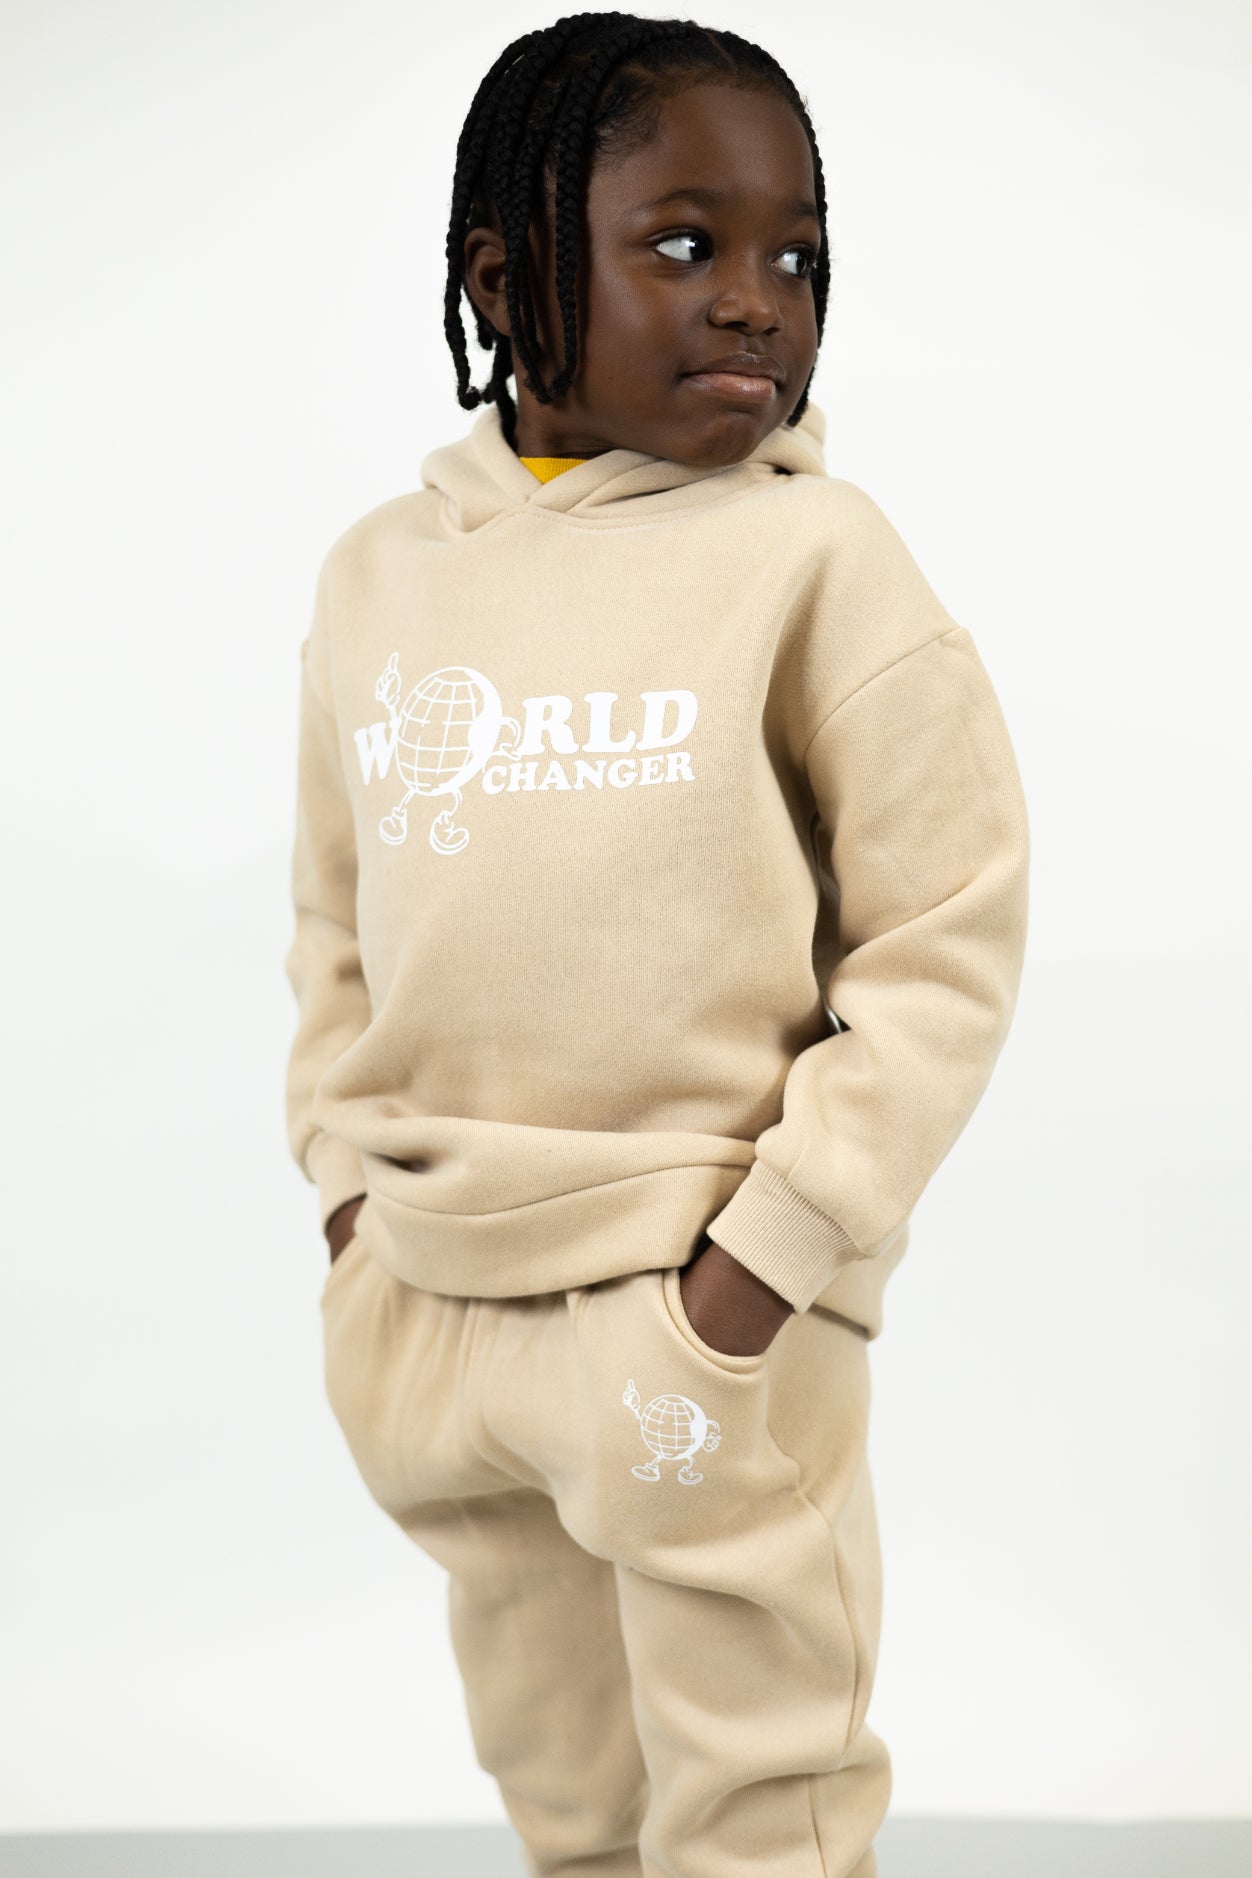 World Changer - Toddler Sweatsuit